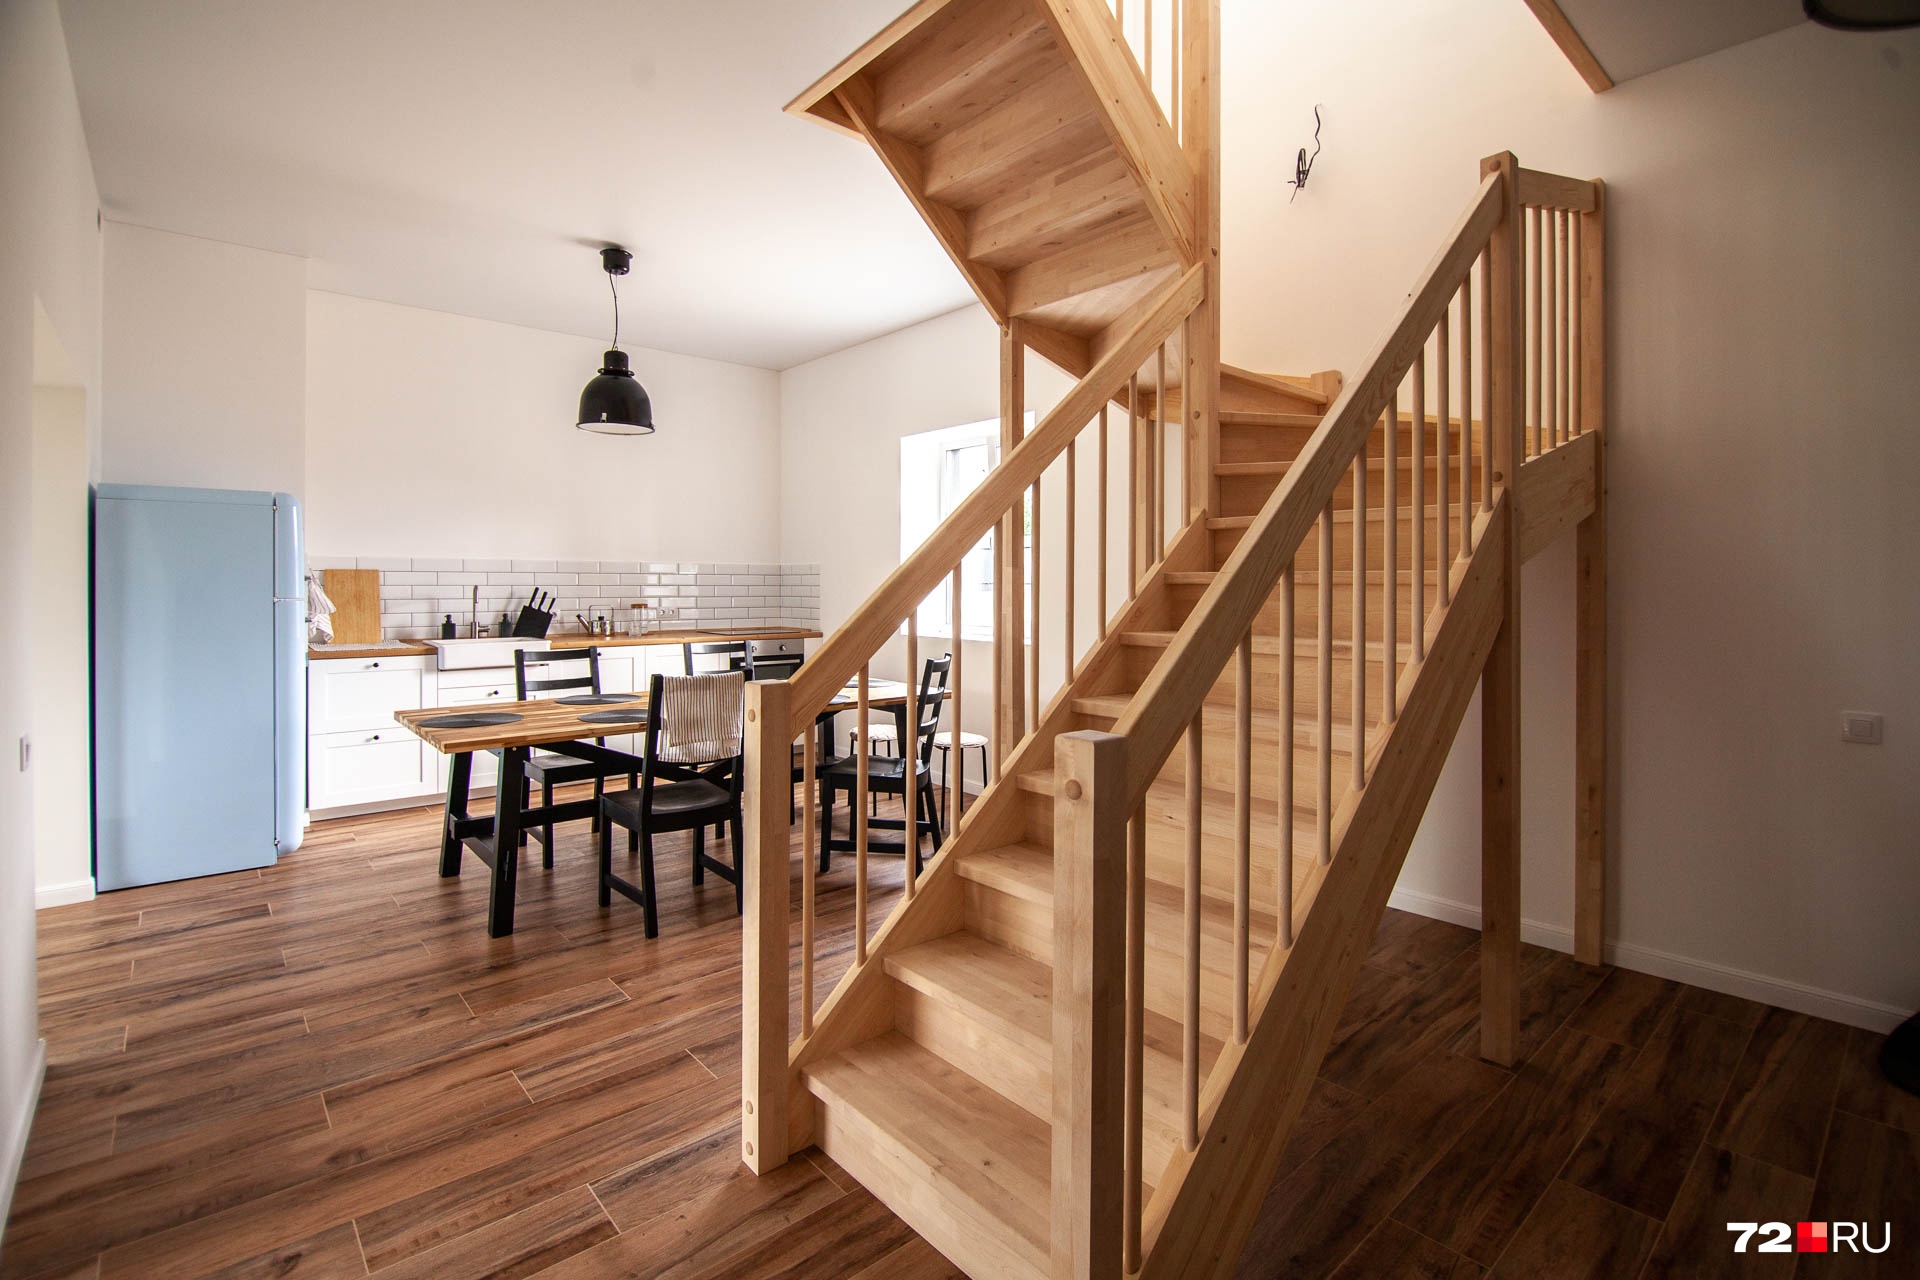 На второй этаж из кухни ведет деревянная лестница. Минимальное количество мебели делает уборку простой и быстрой